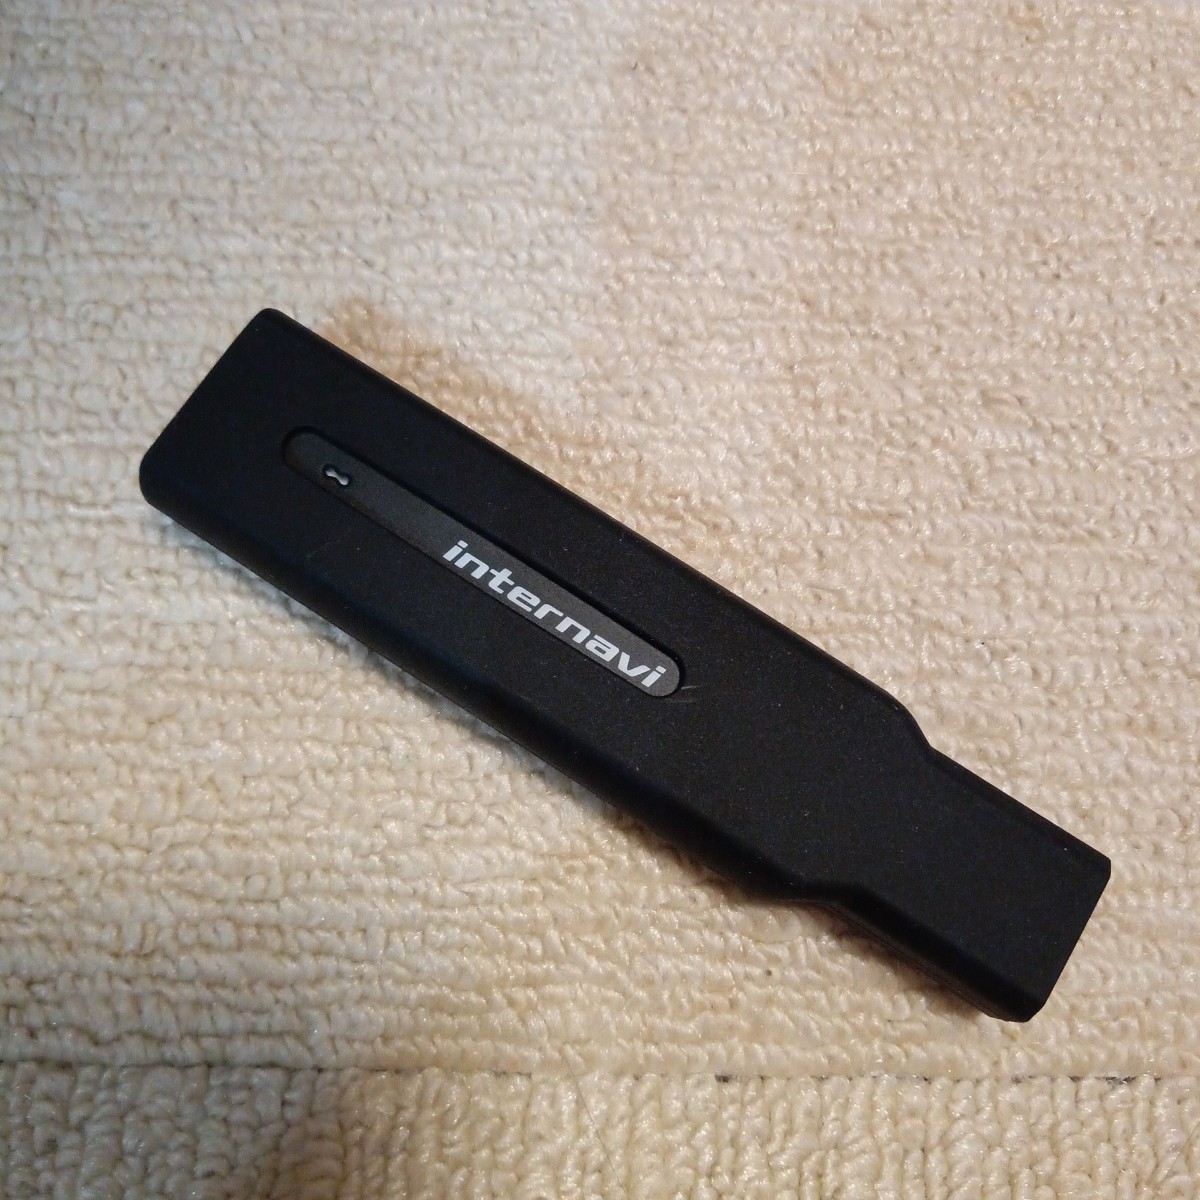  ホンダGathers プレミアムクラブ インターナビ リンクアップ フリーデータ 通信 USB本体 HSK-1000G SIMカード internavi リンクフリーの画像4